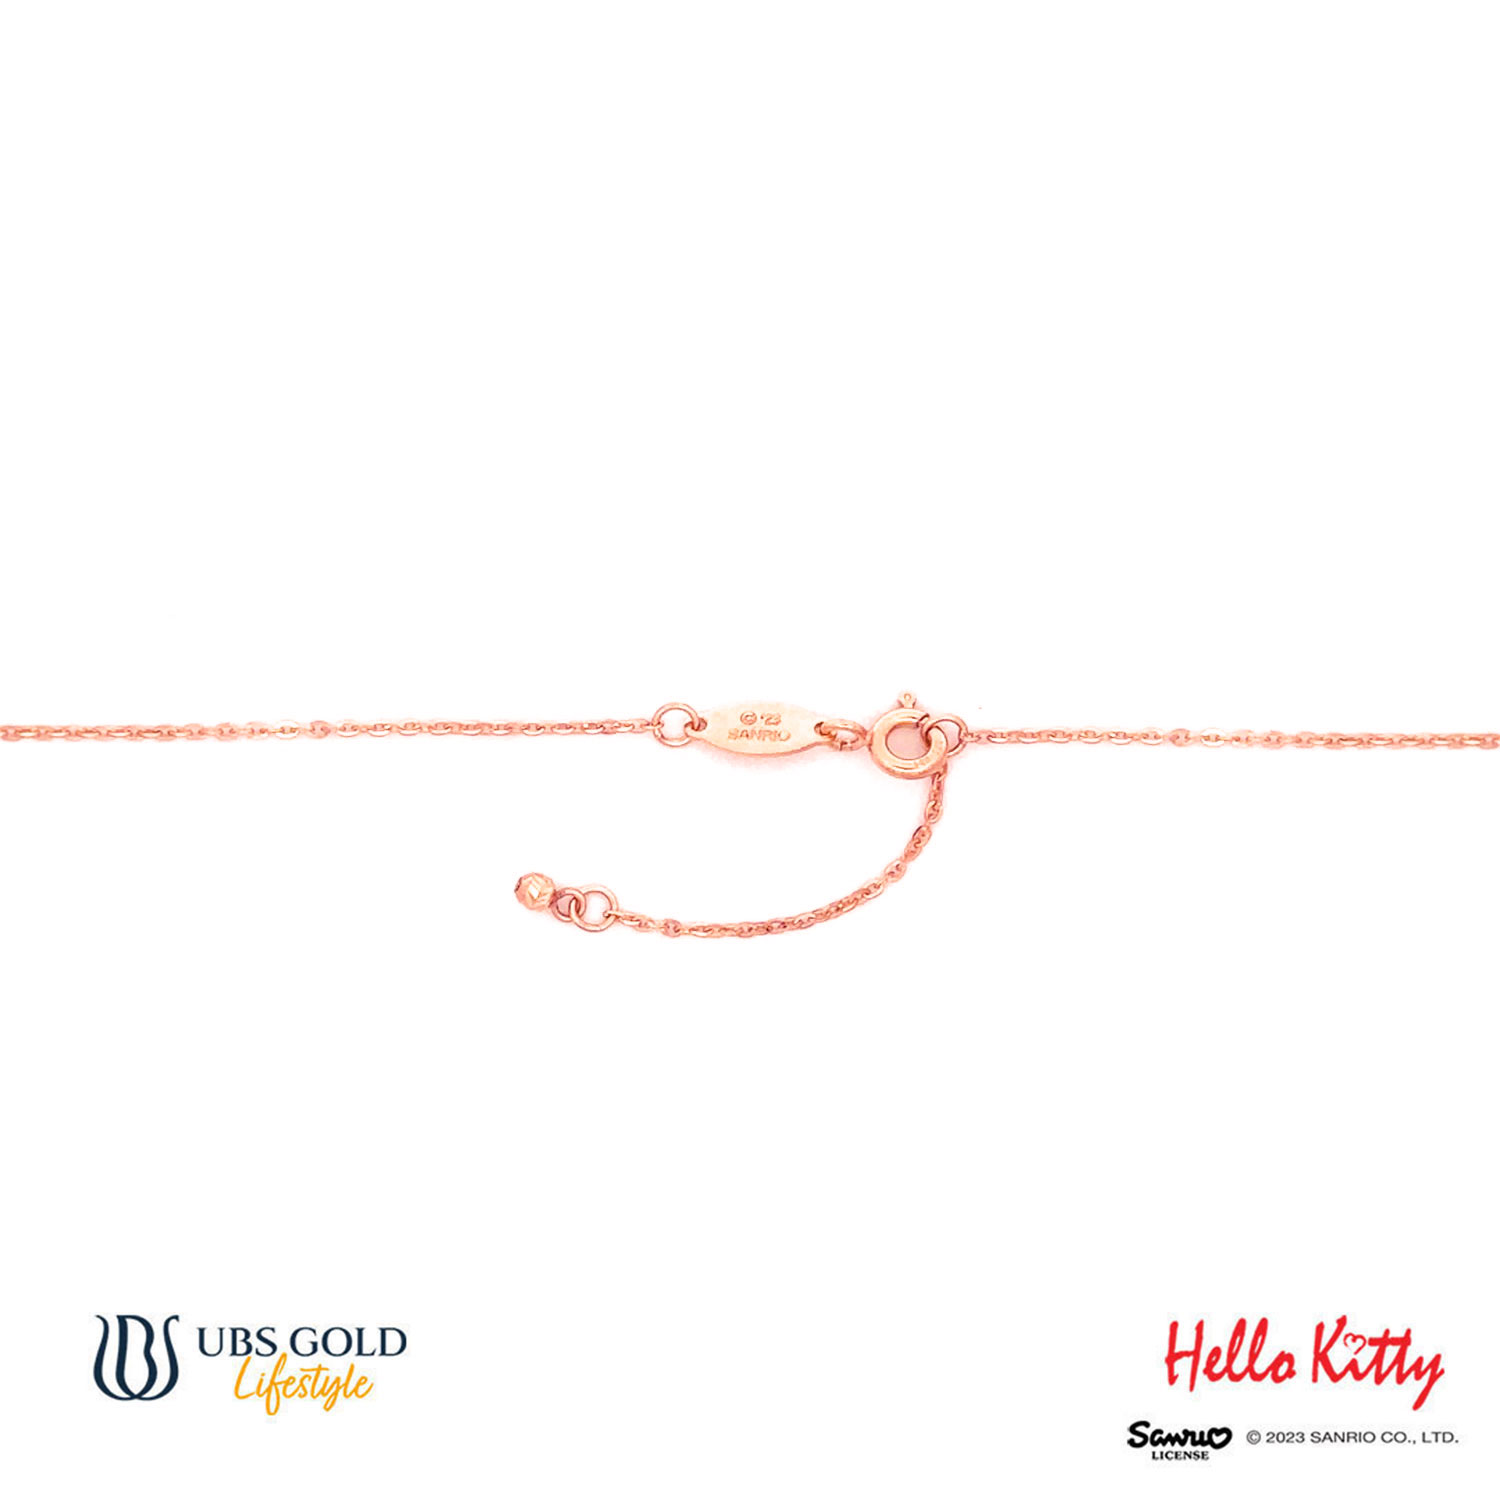 UBS Gold Kalung Emas Sanrio Hello Kitty - Kkz0020 - 17K